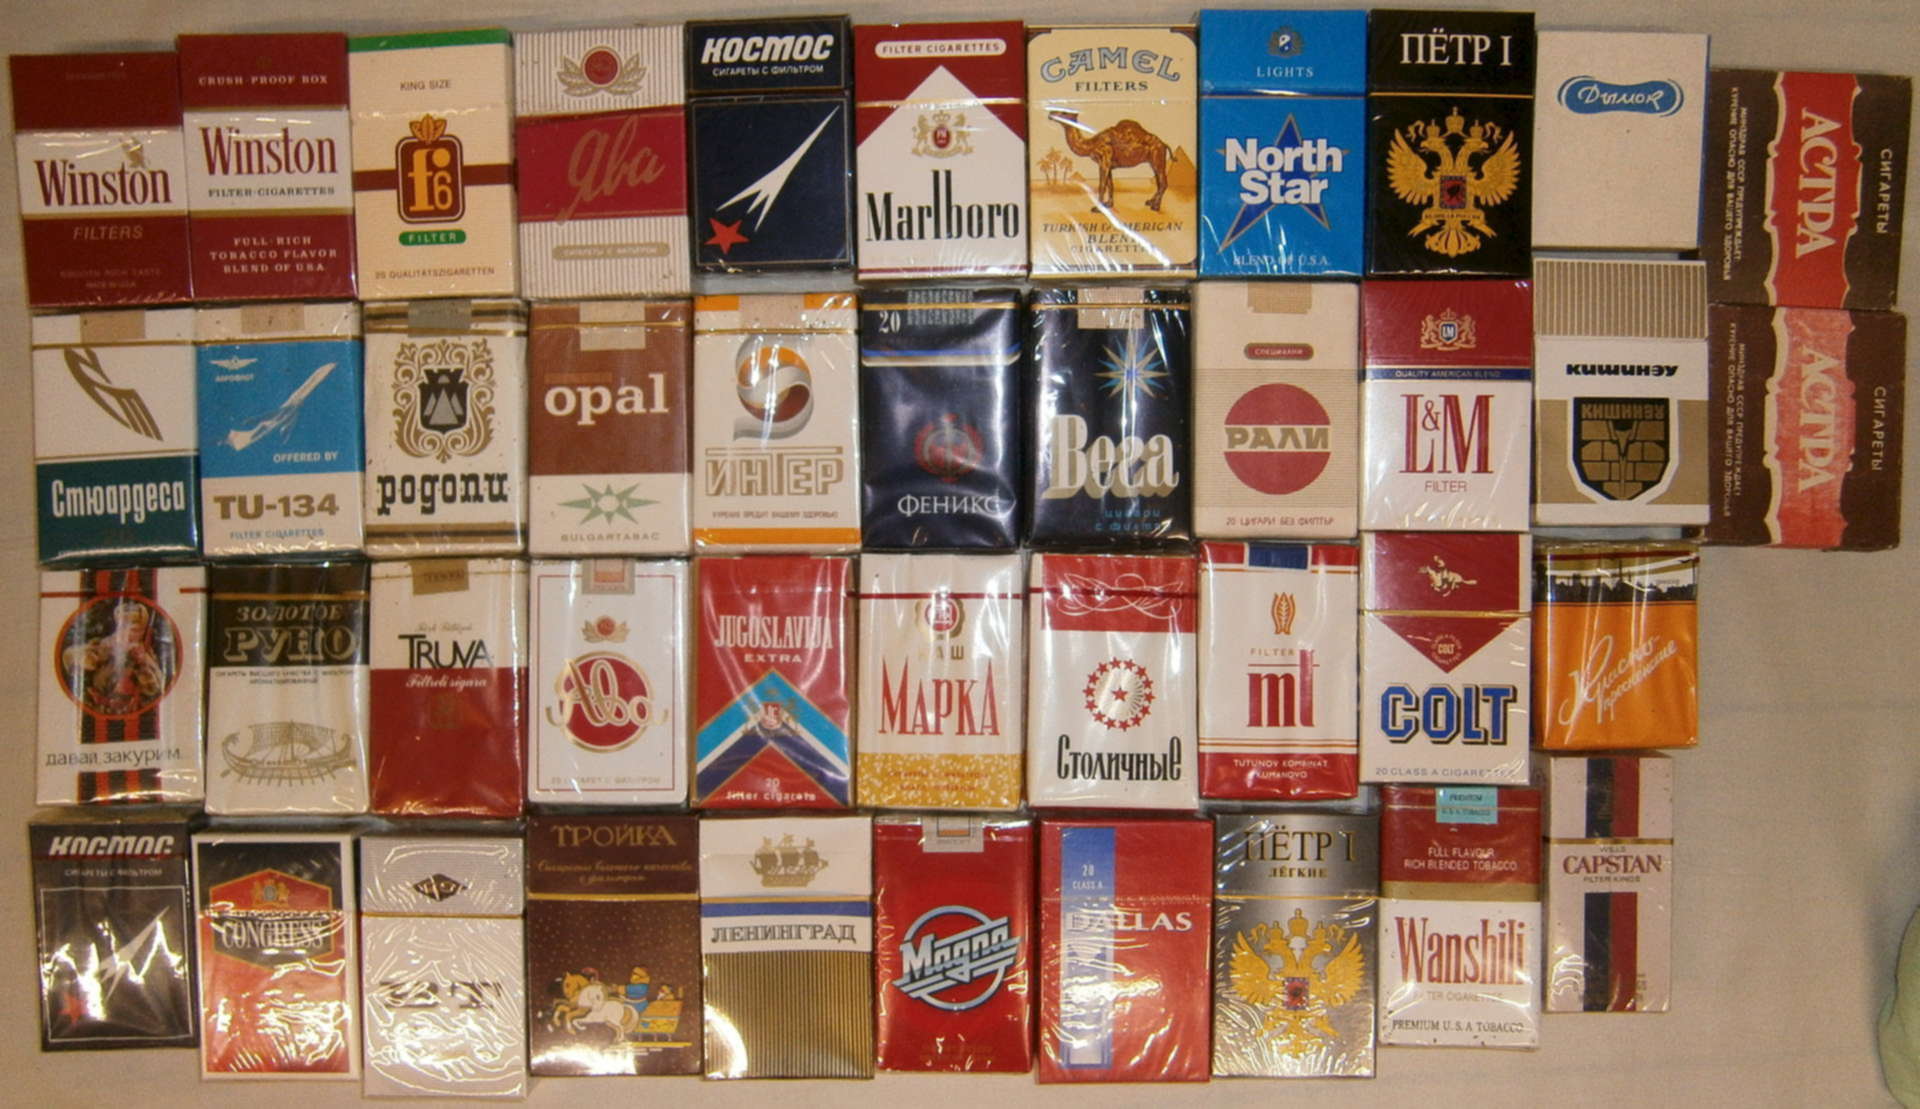 Сигареты Погарской Табачной Фабрики Купить В Москве